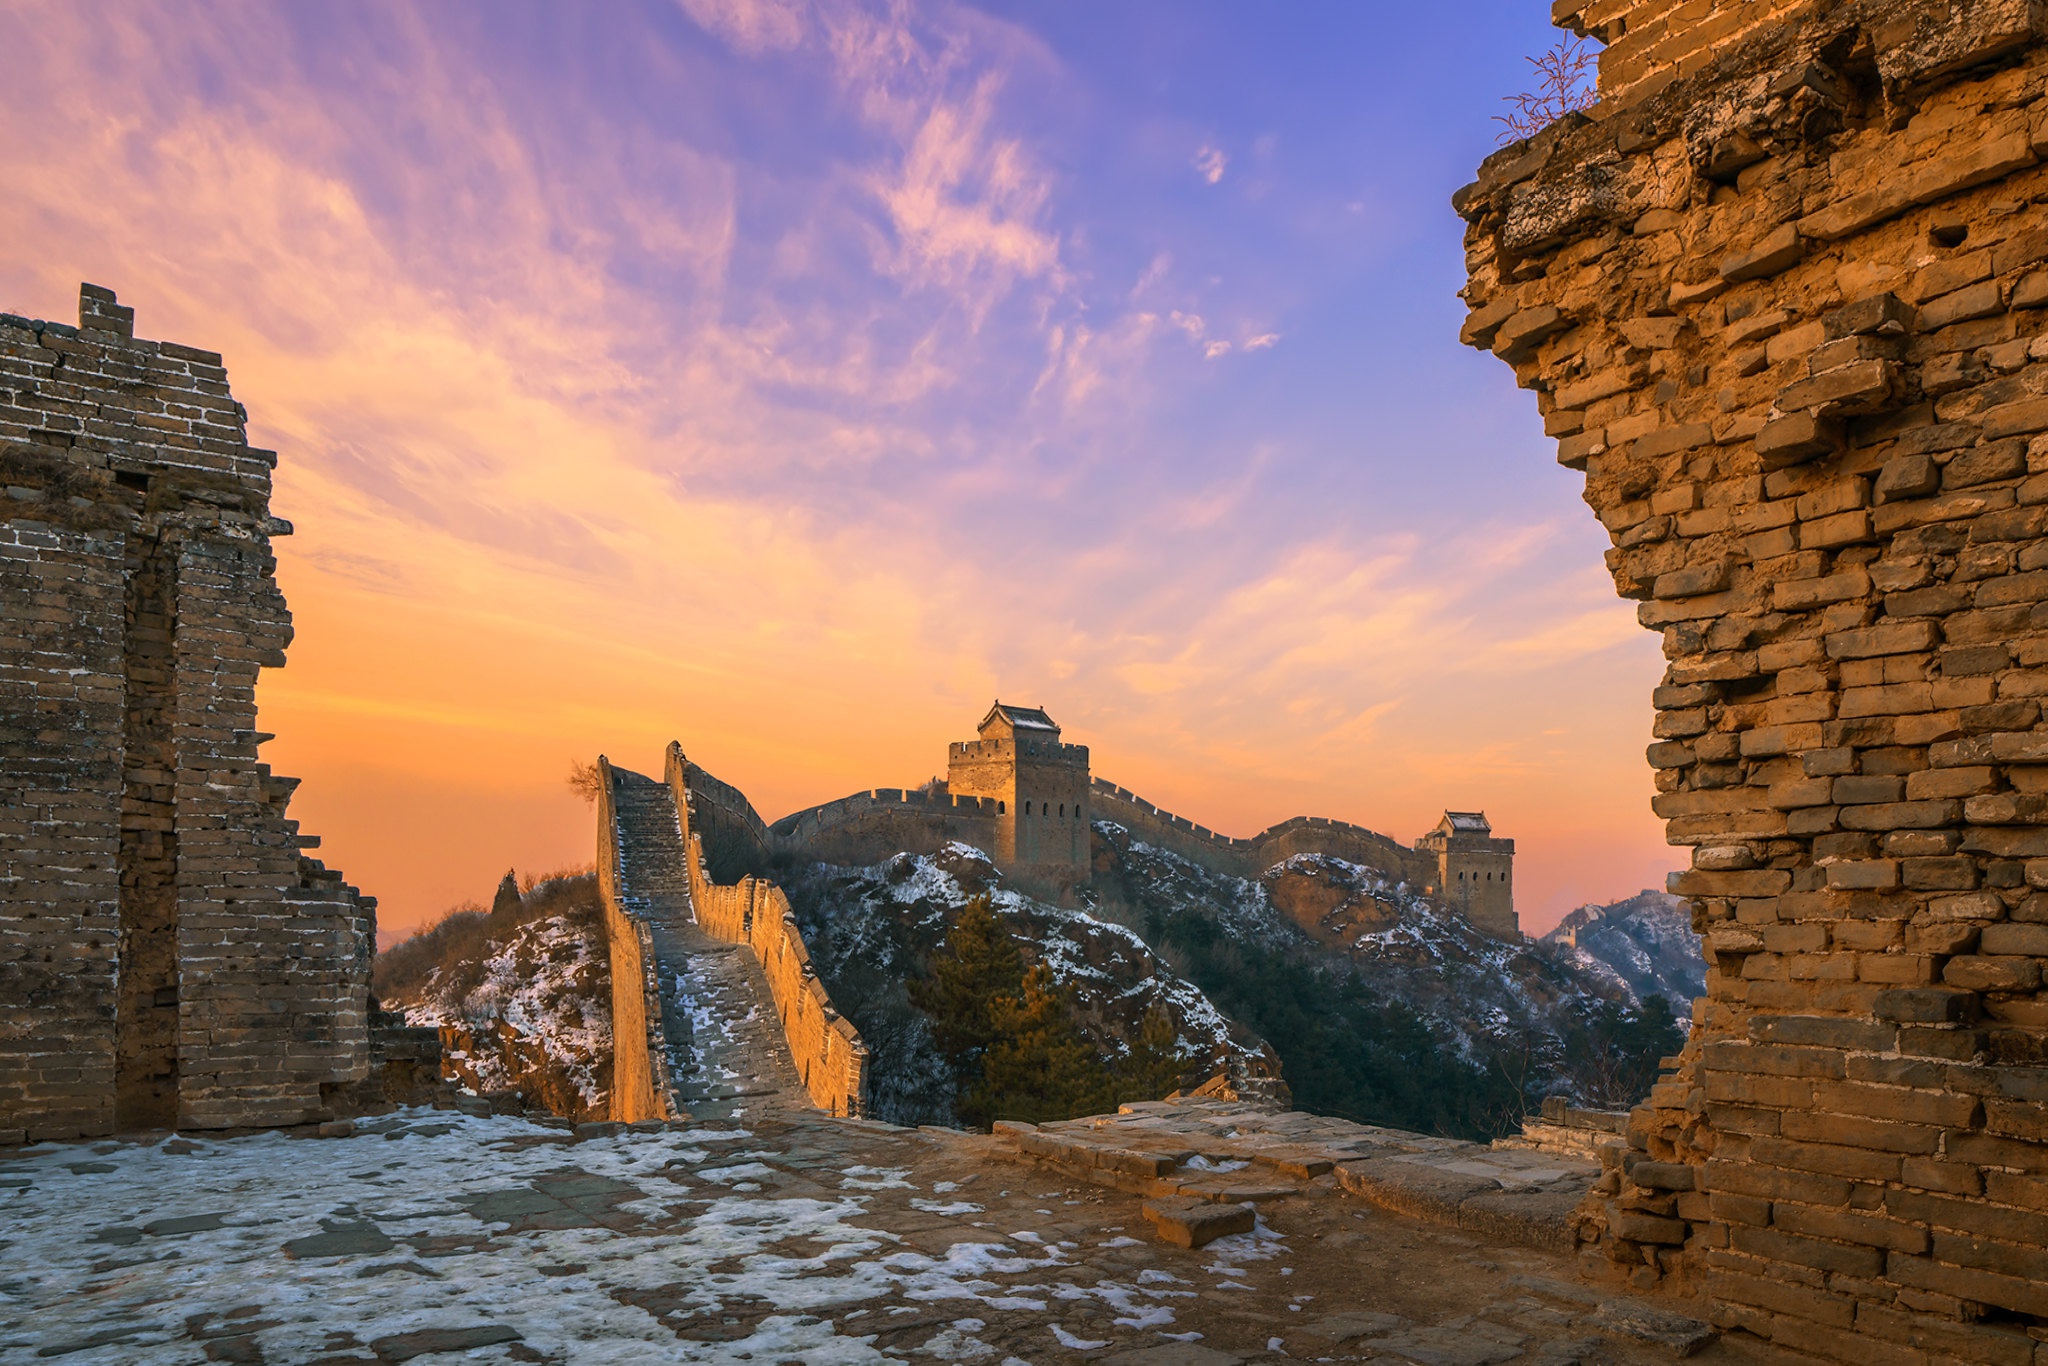 Man Made Great Wall Of China 2048x1366